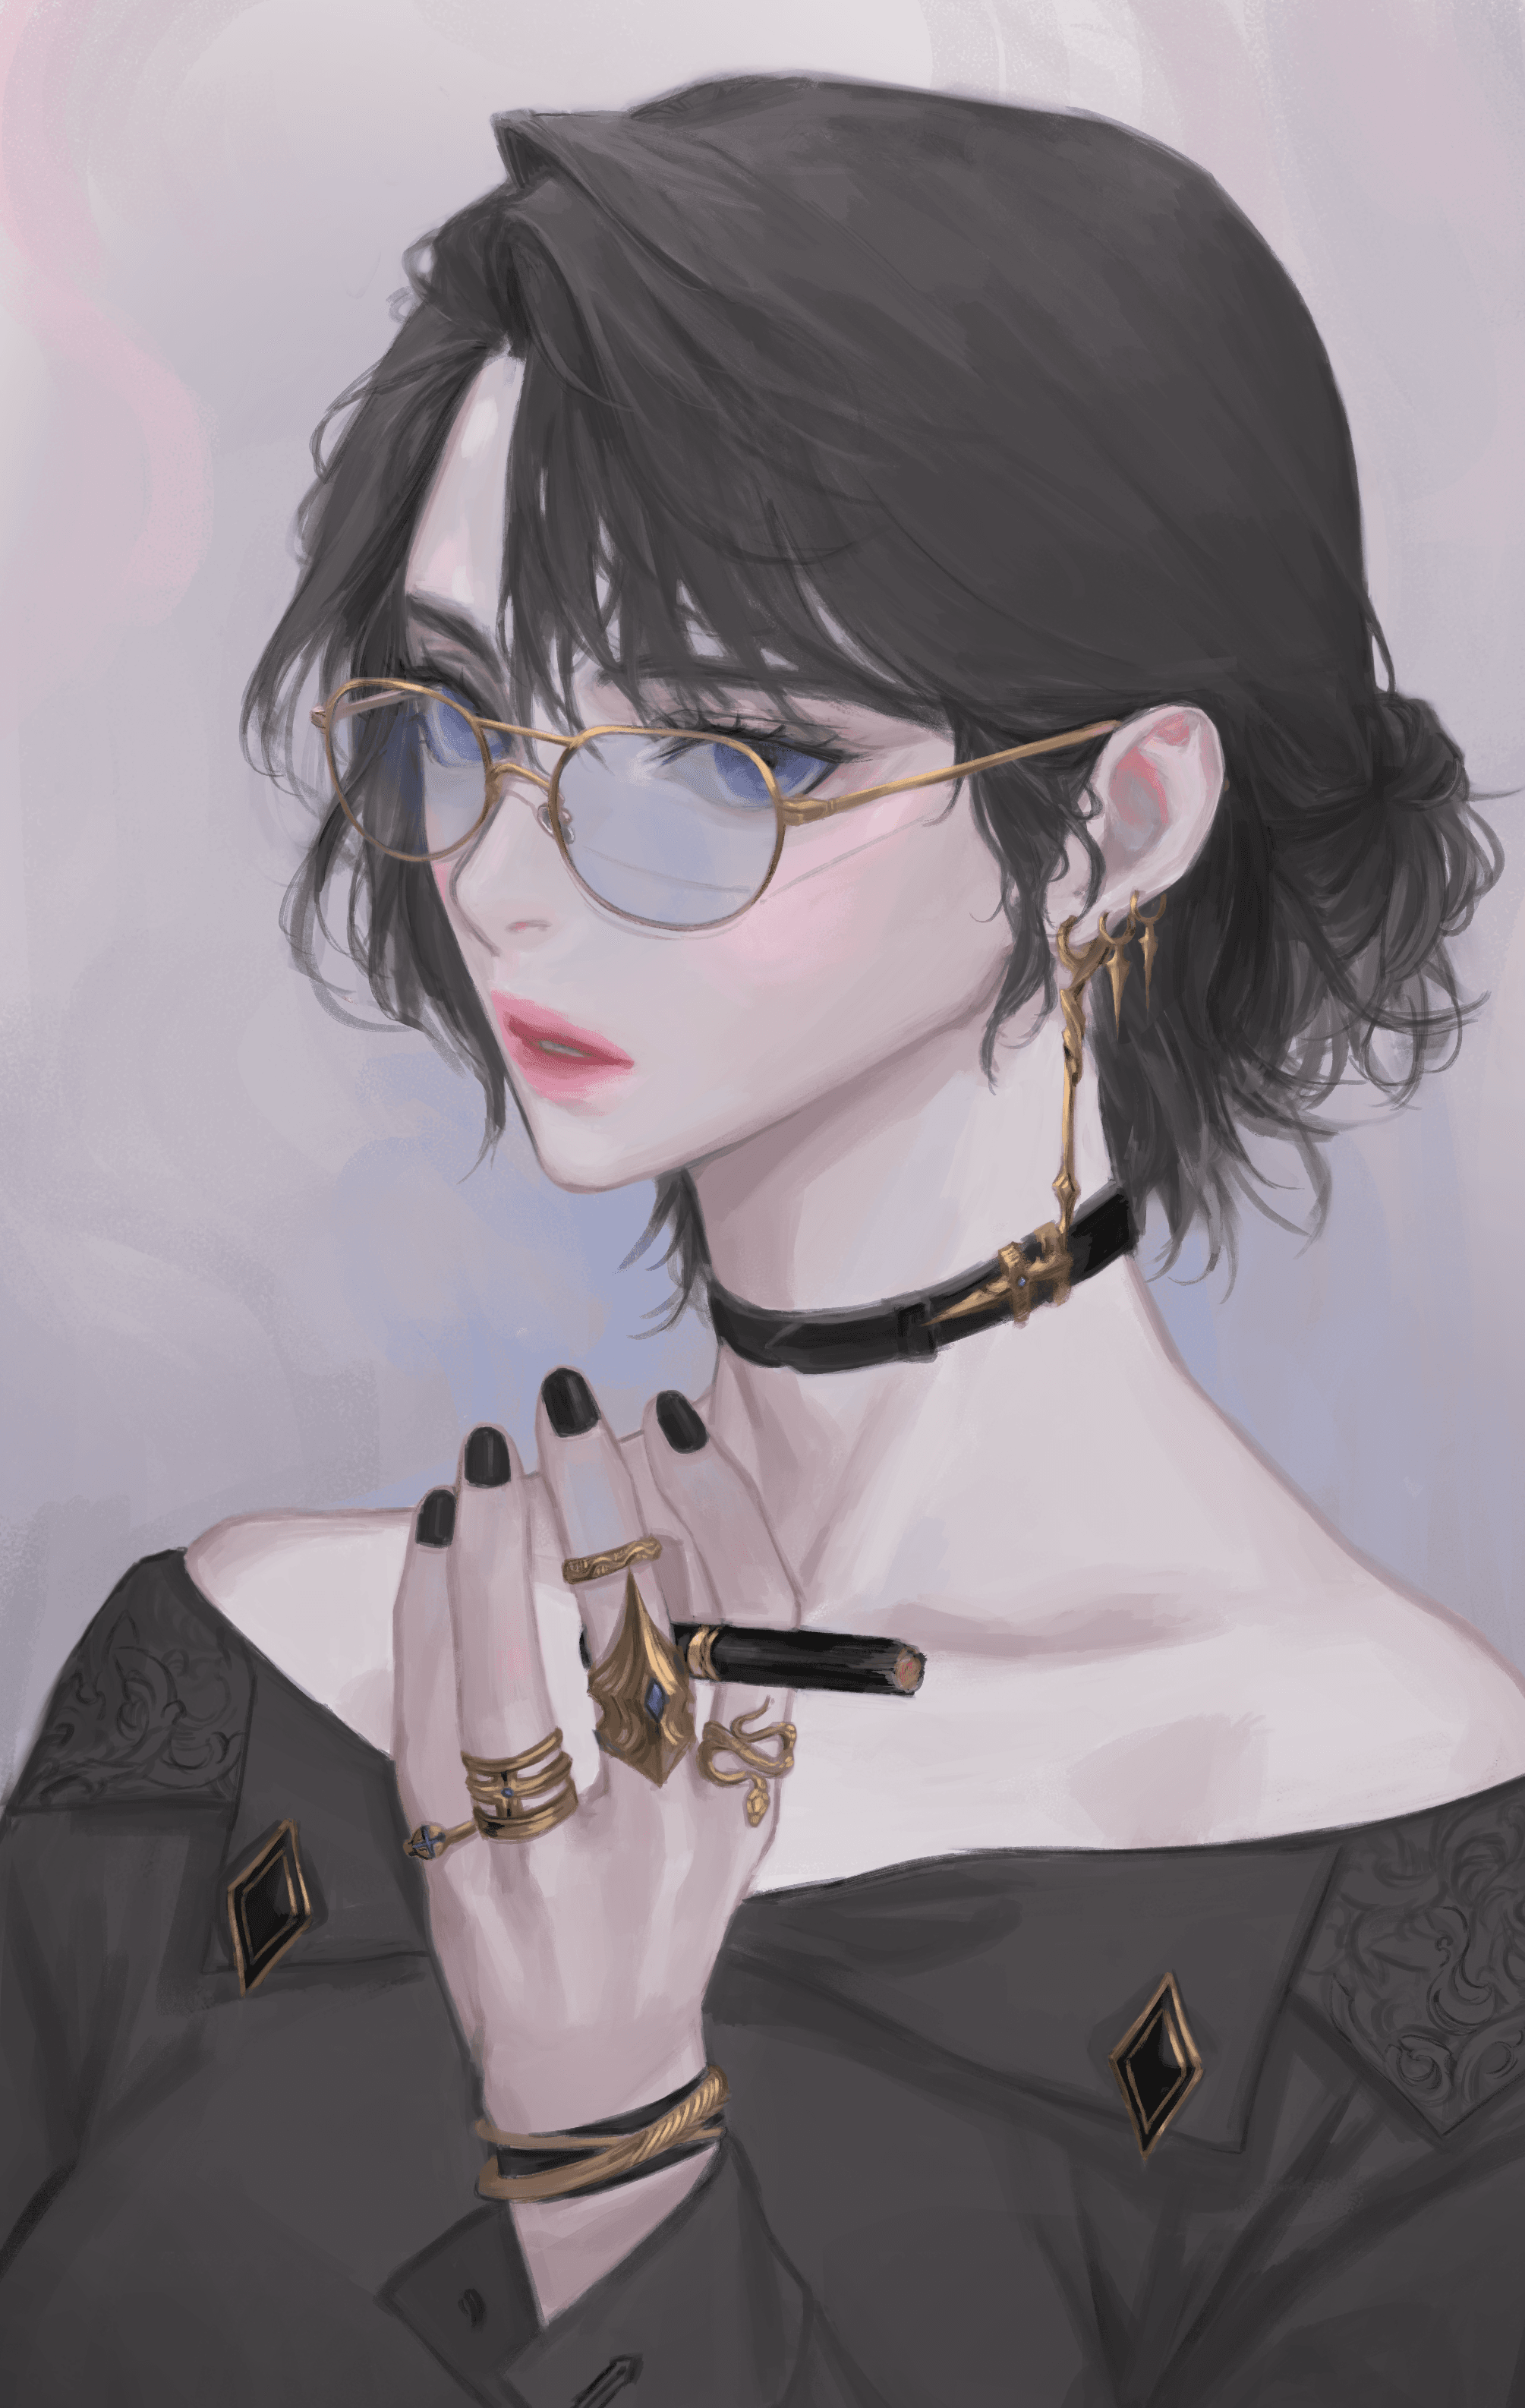 Cigarette,Rings,Glasses